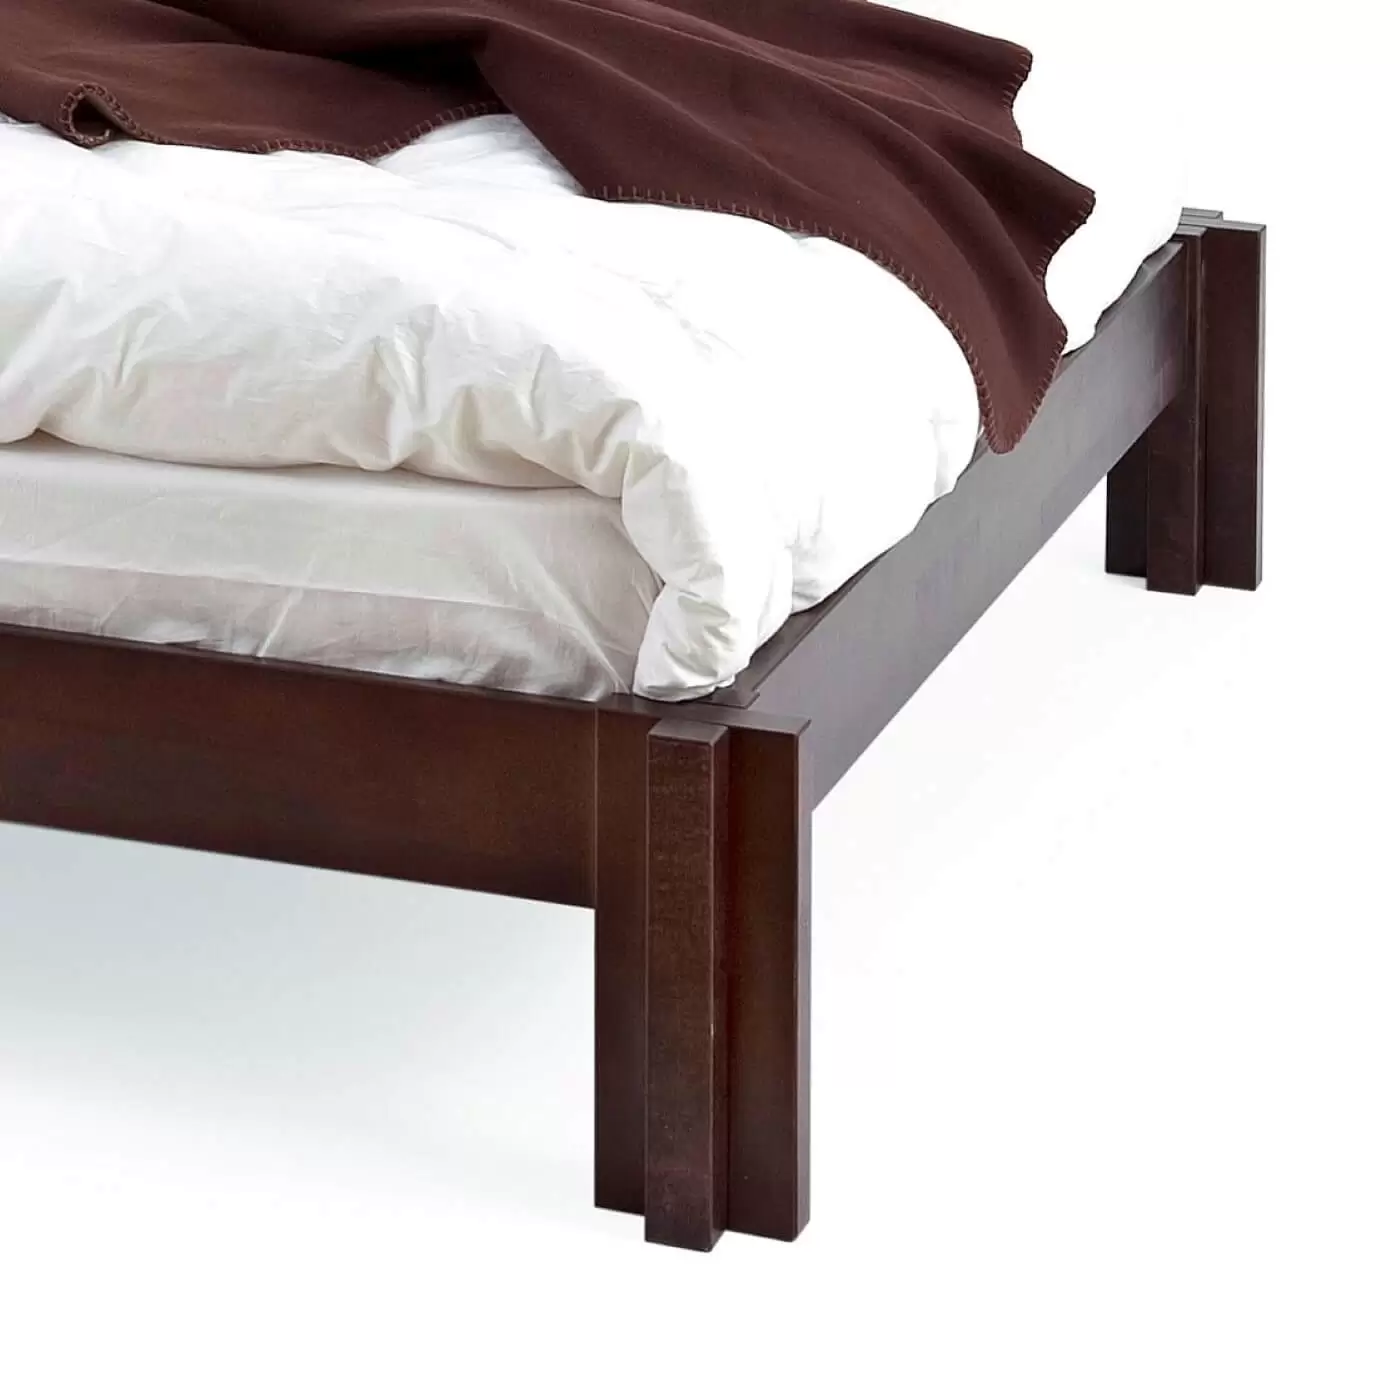 Niskie łóżko wenge MORI. Przybliżony widok na nóżki łóżka na poddasze z drewna brzozy skandynawskiej lakierowanej na kolor wenge. Nowoczesny skandynawski design